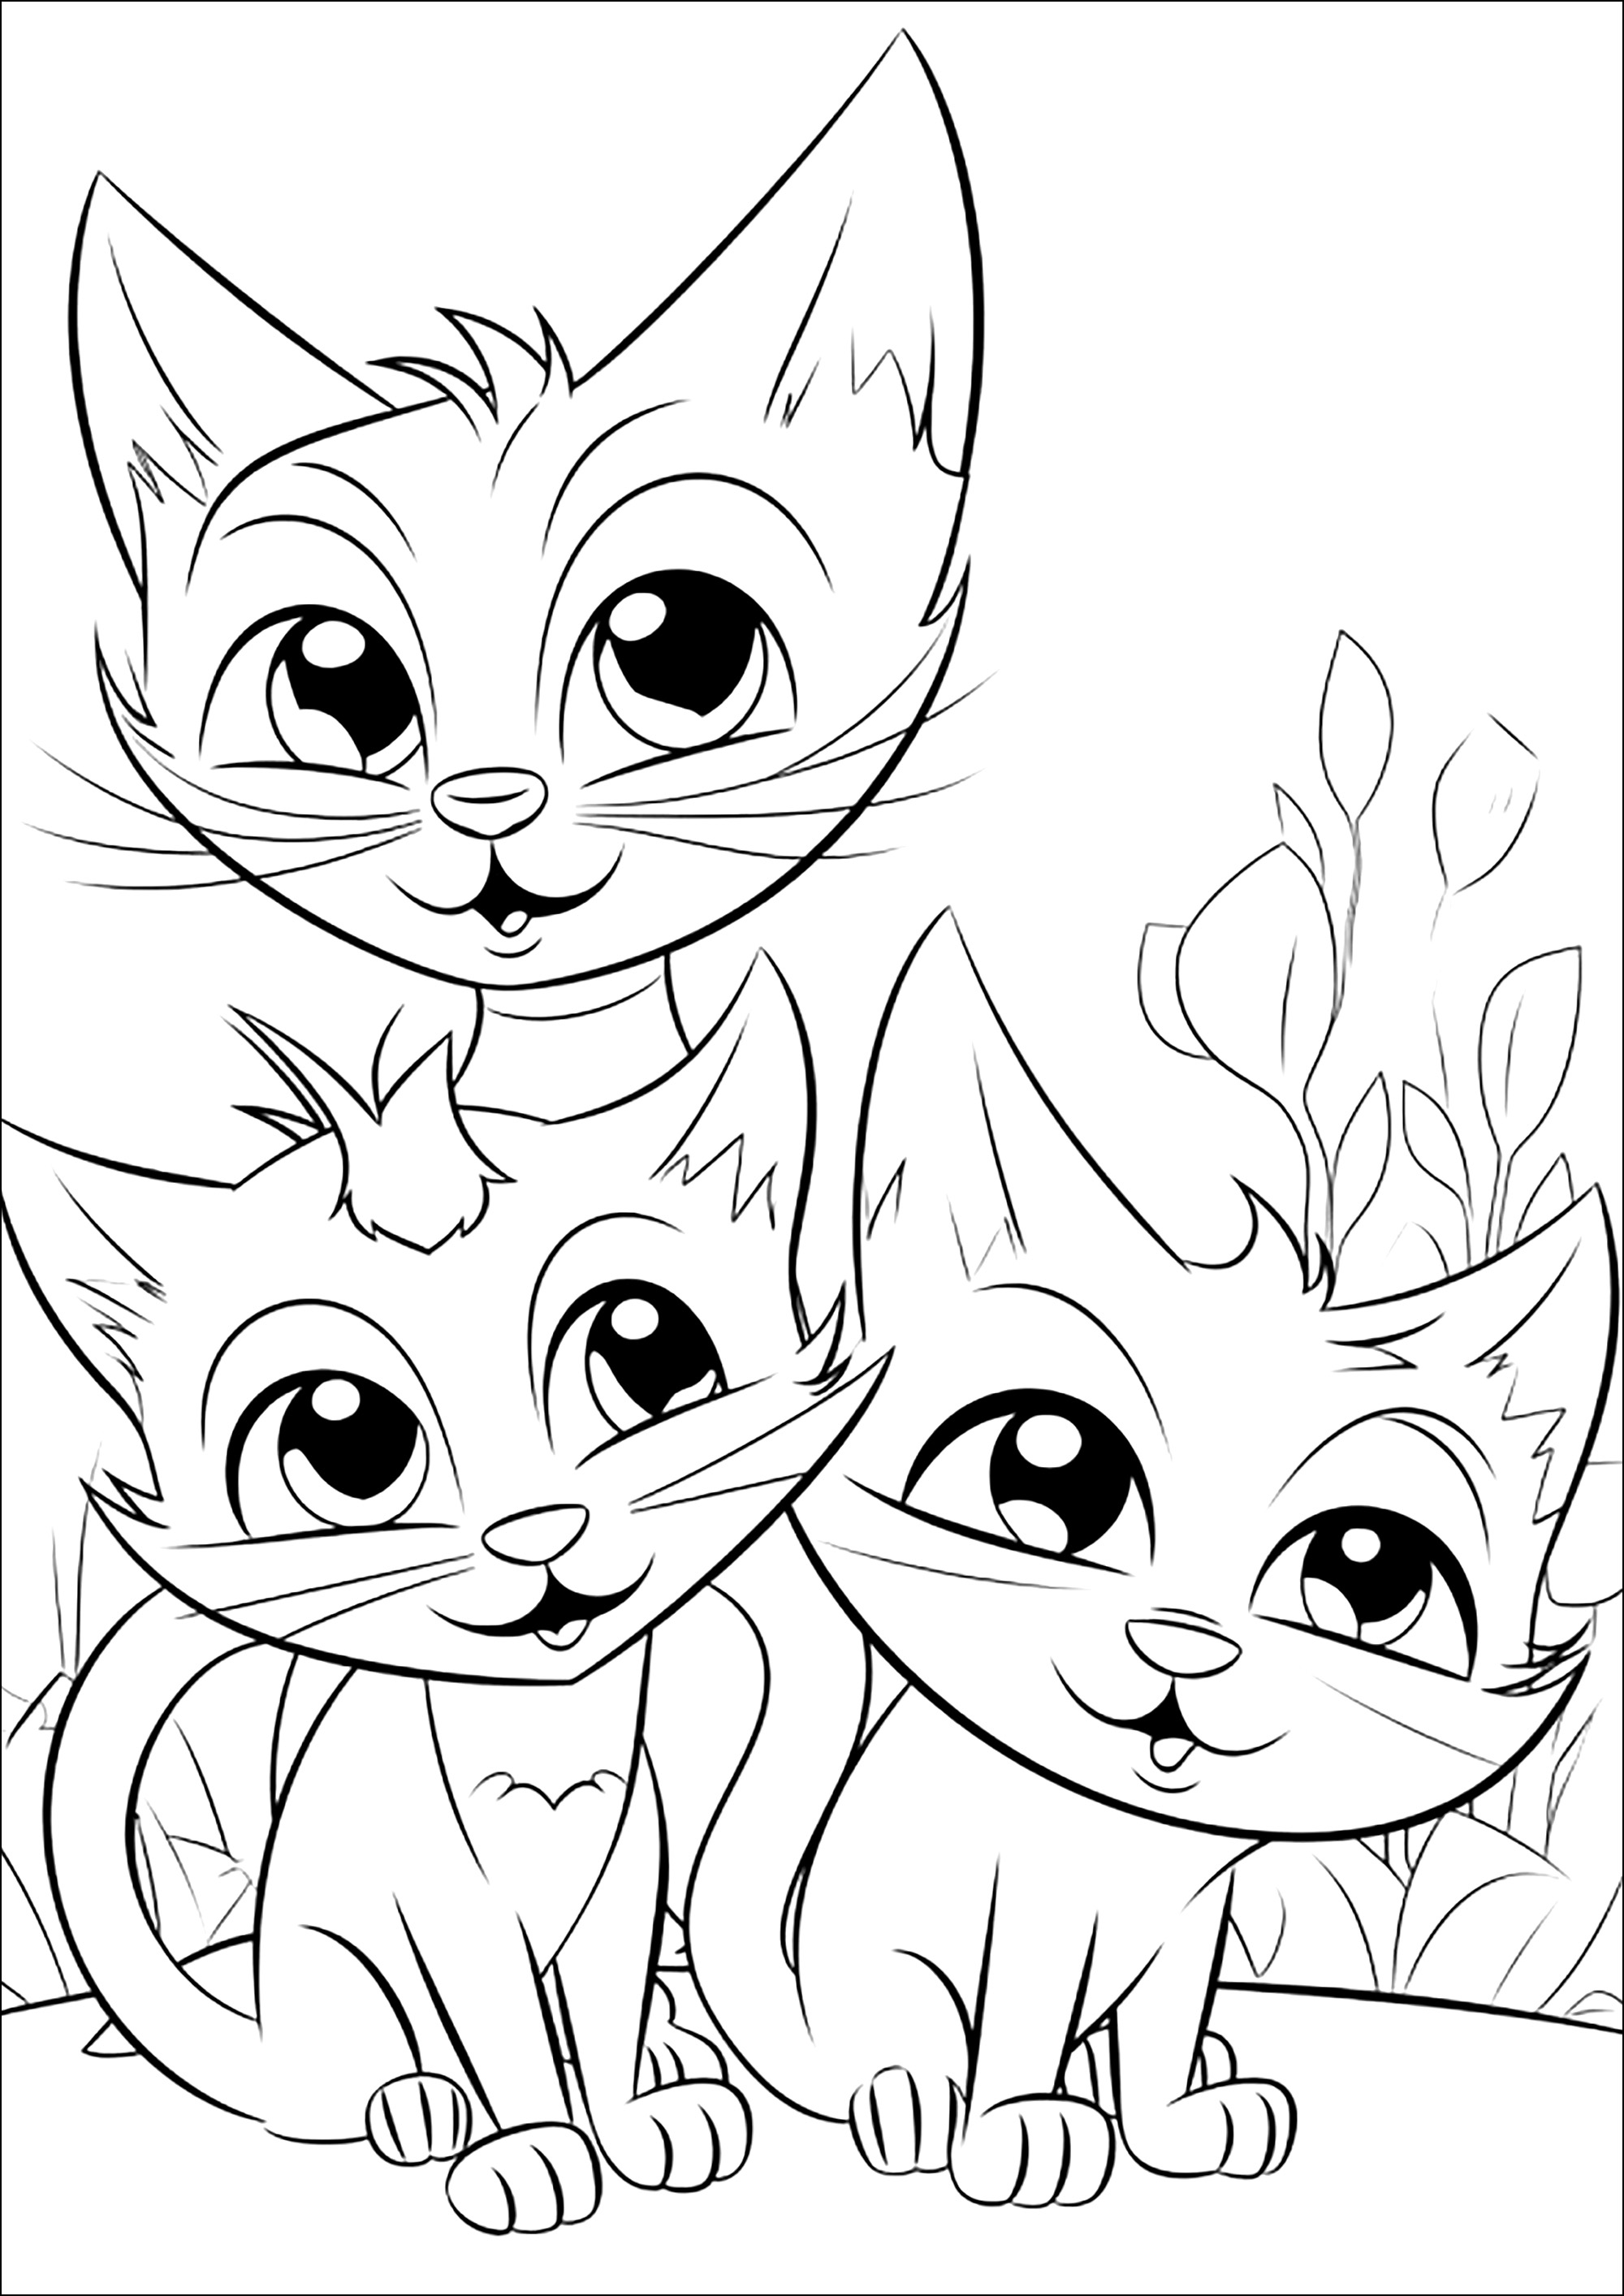 Trois chats facétieux. Un coloriage très simple, avec quelques détails végétaux en arrière-plan